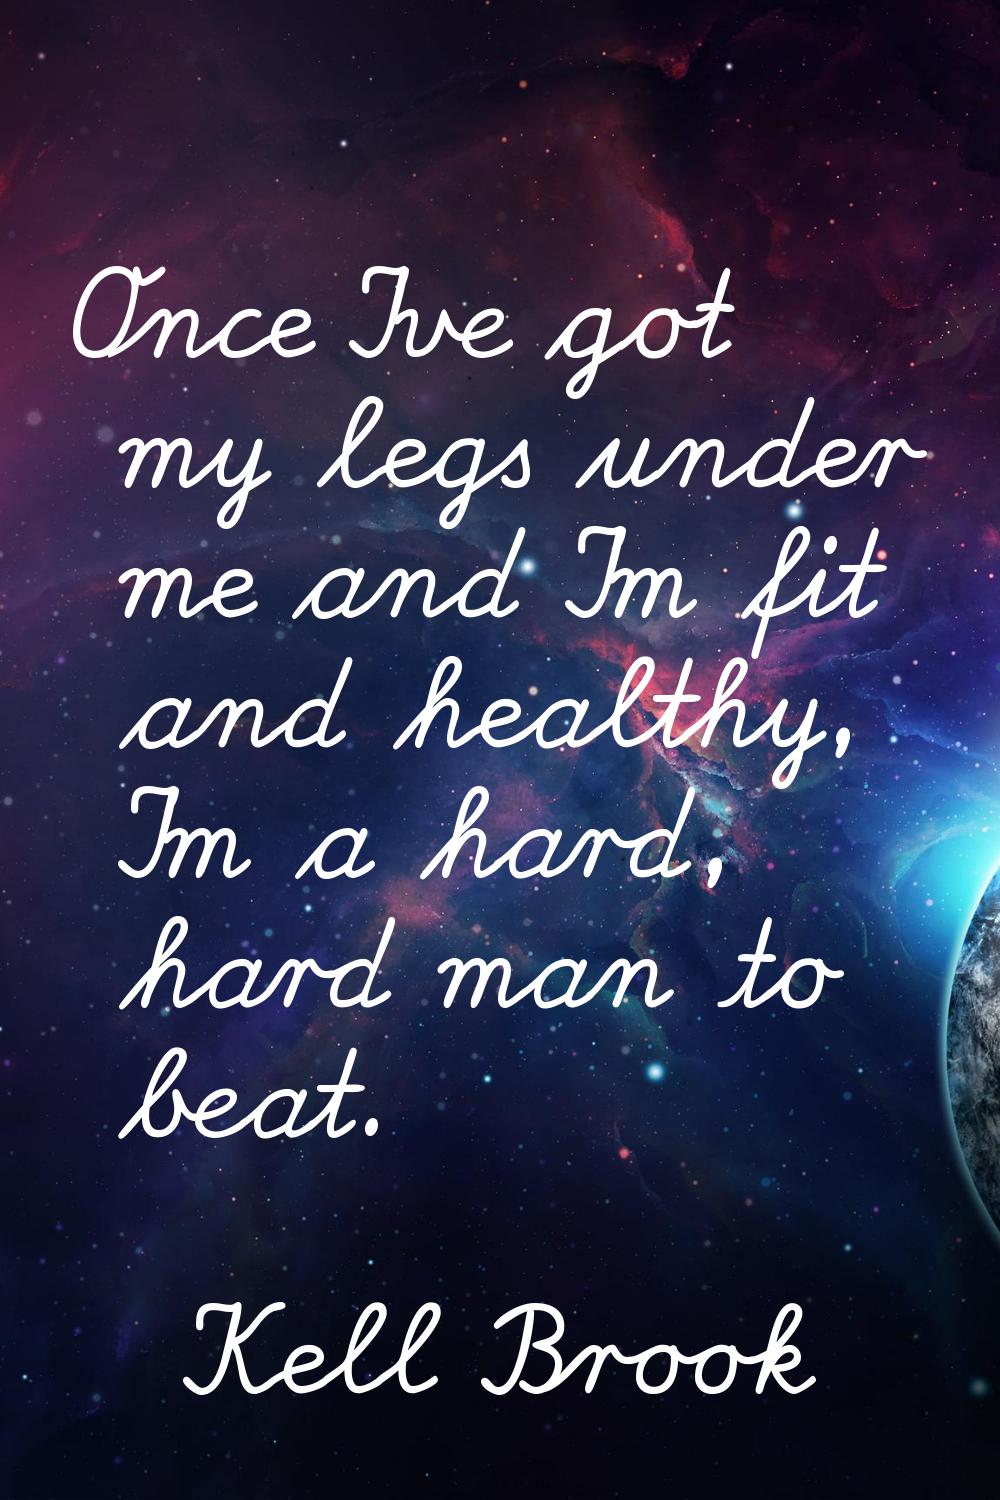 Once I've got my legs under me and I'm fit and healthy, I'm a hard, hard man to beat.